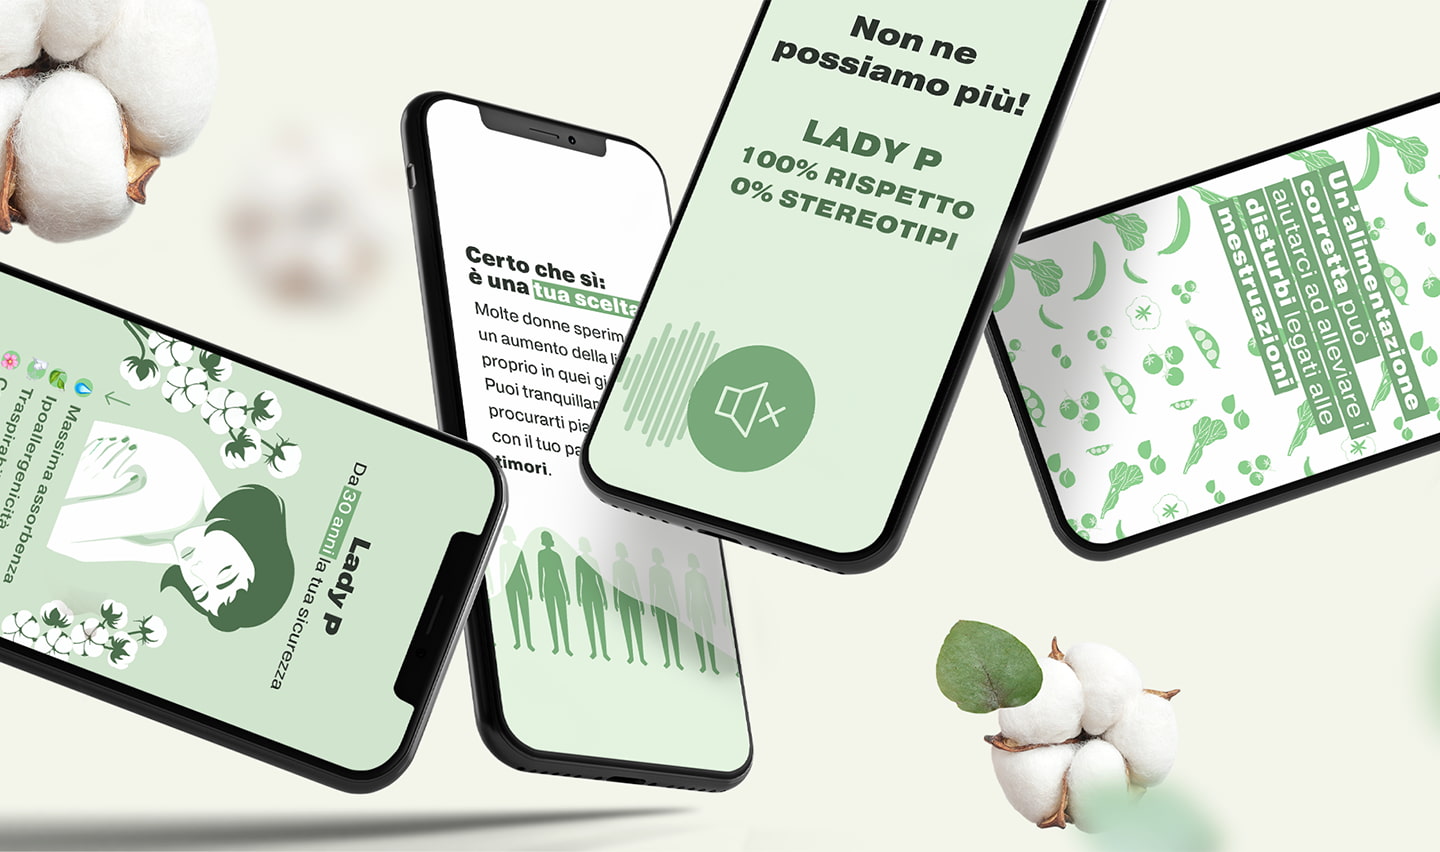 Immagine statica con smartphone e schermata stories del brand Lady P